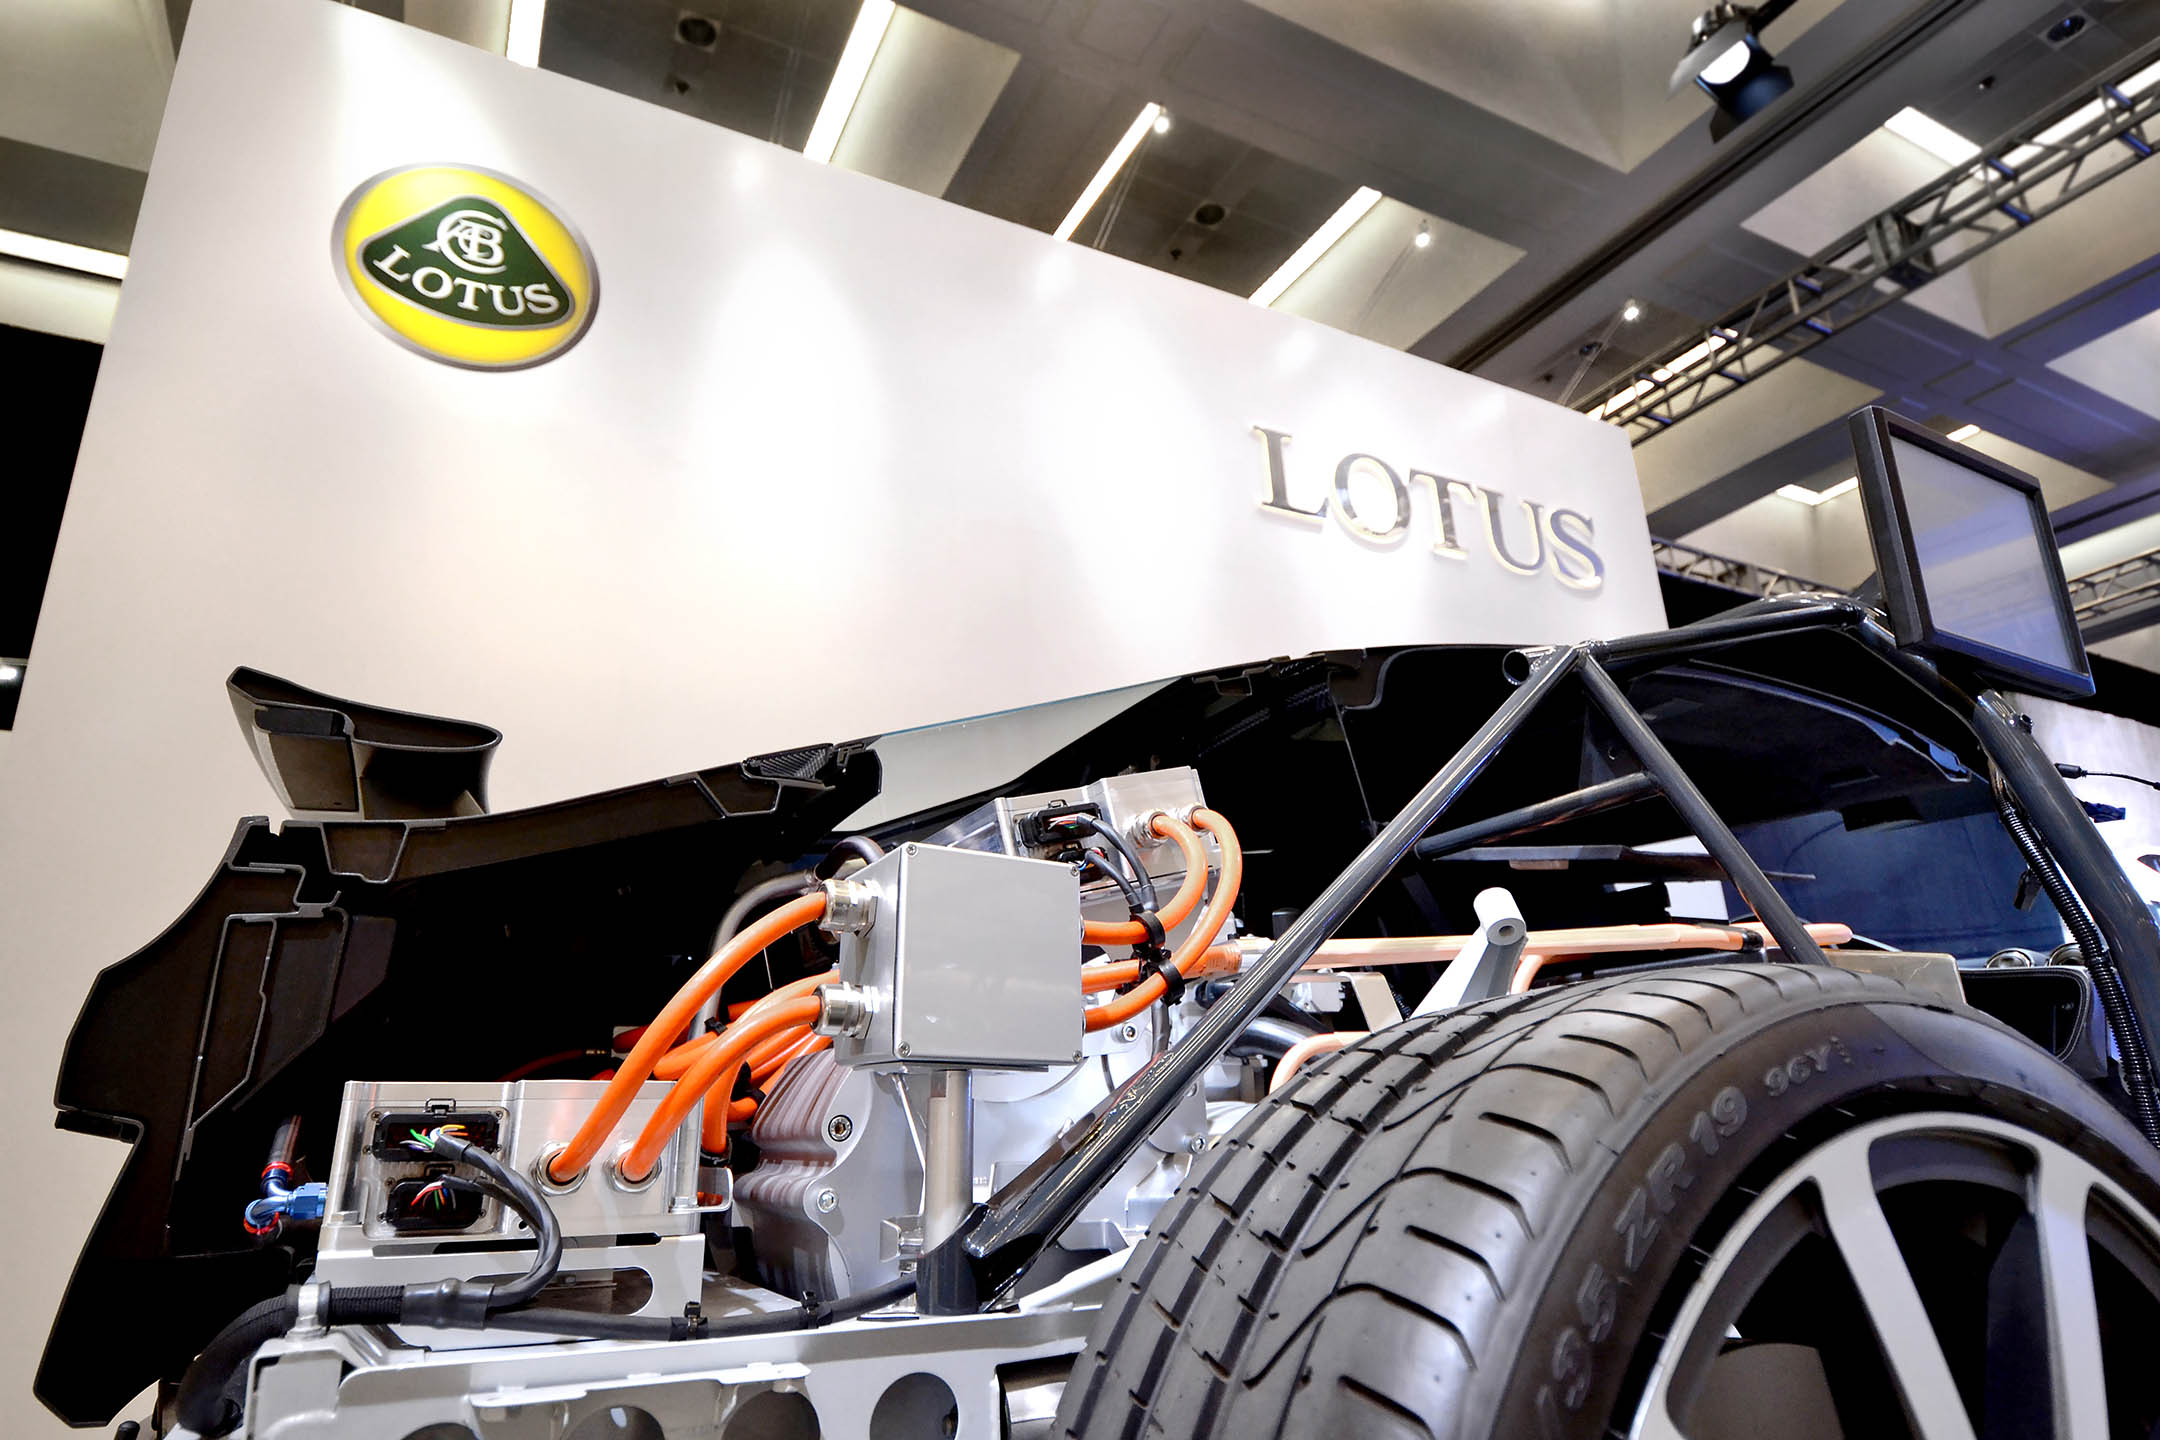 Lotus-LA-Auto-2013-6-1-1.jpg